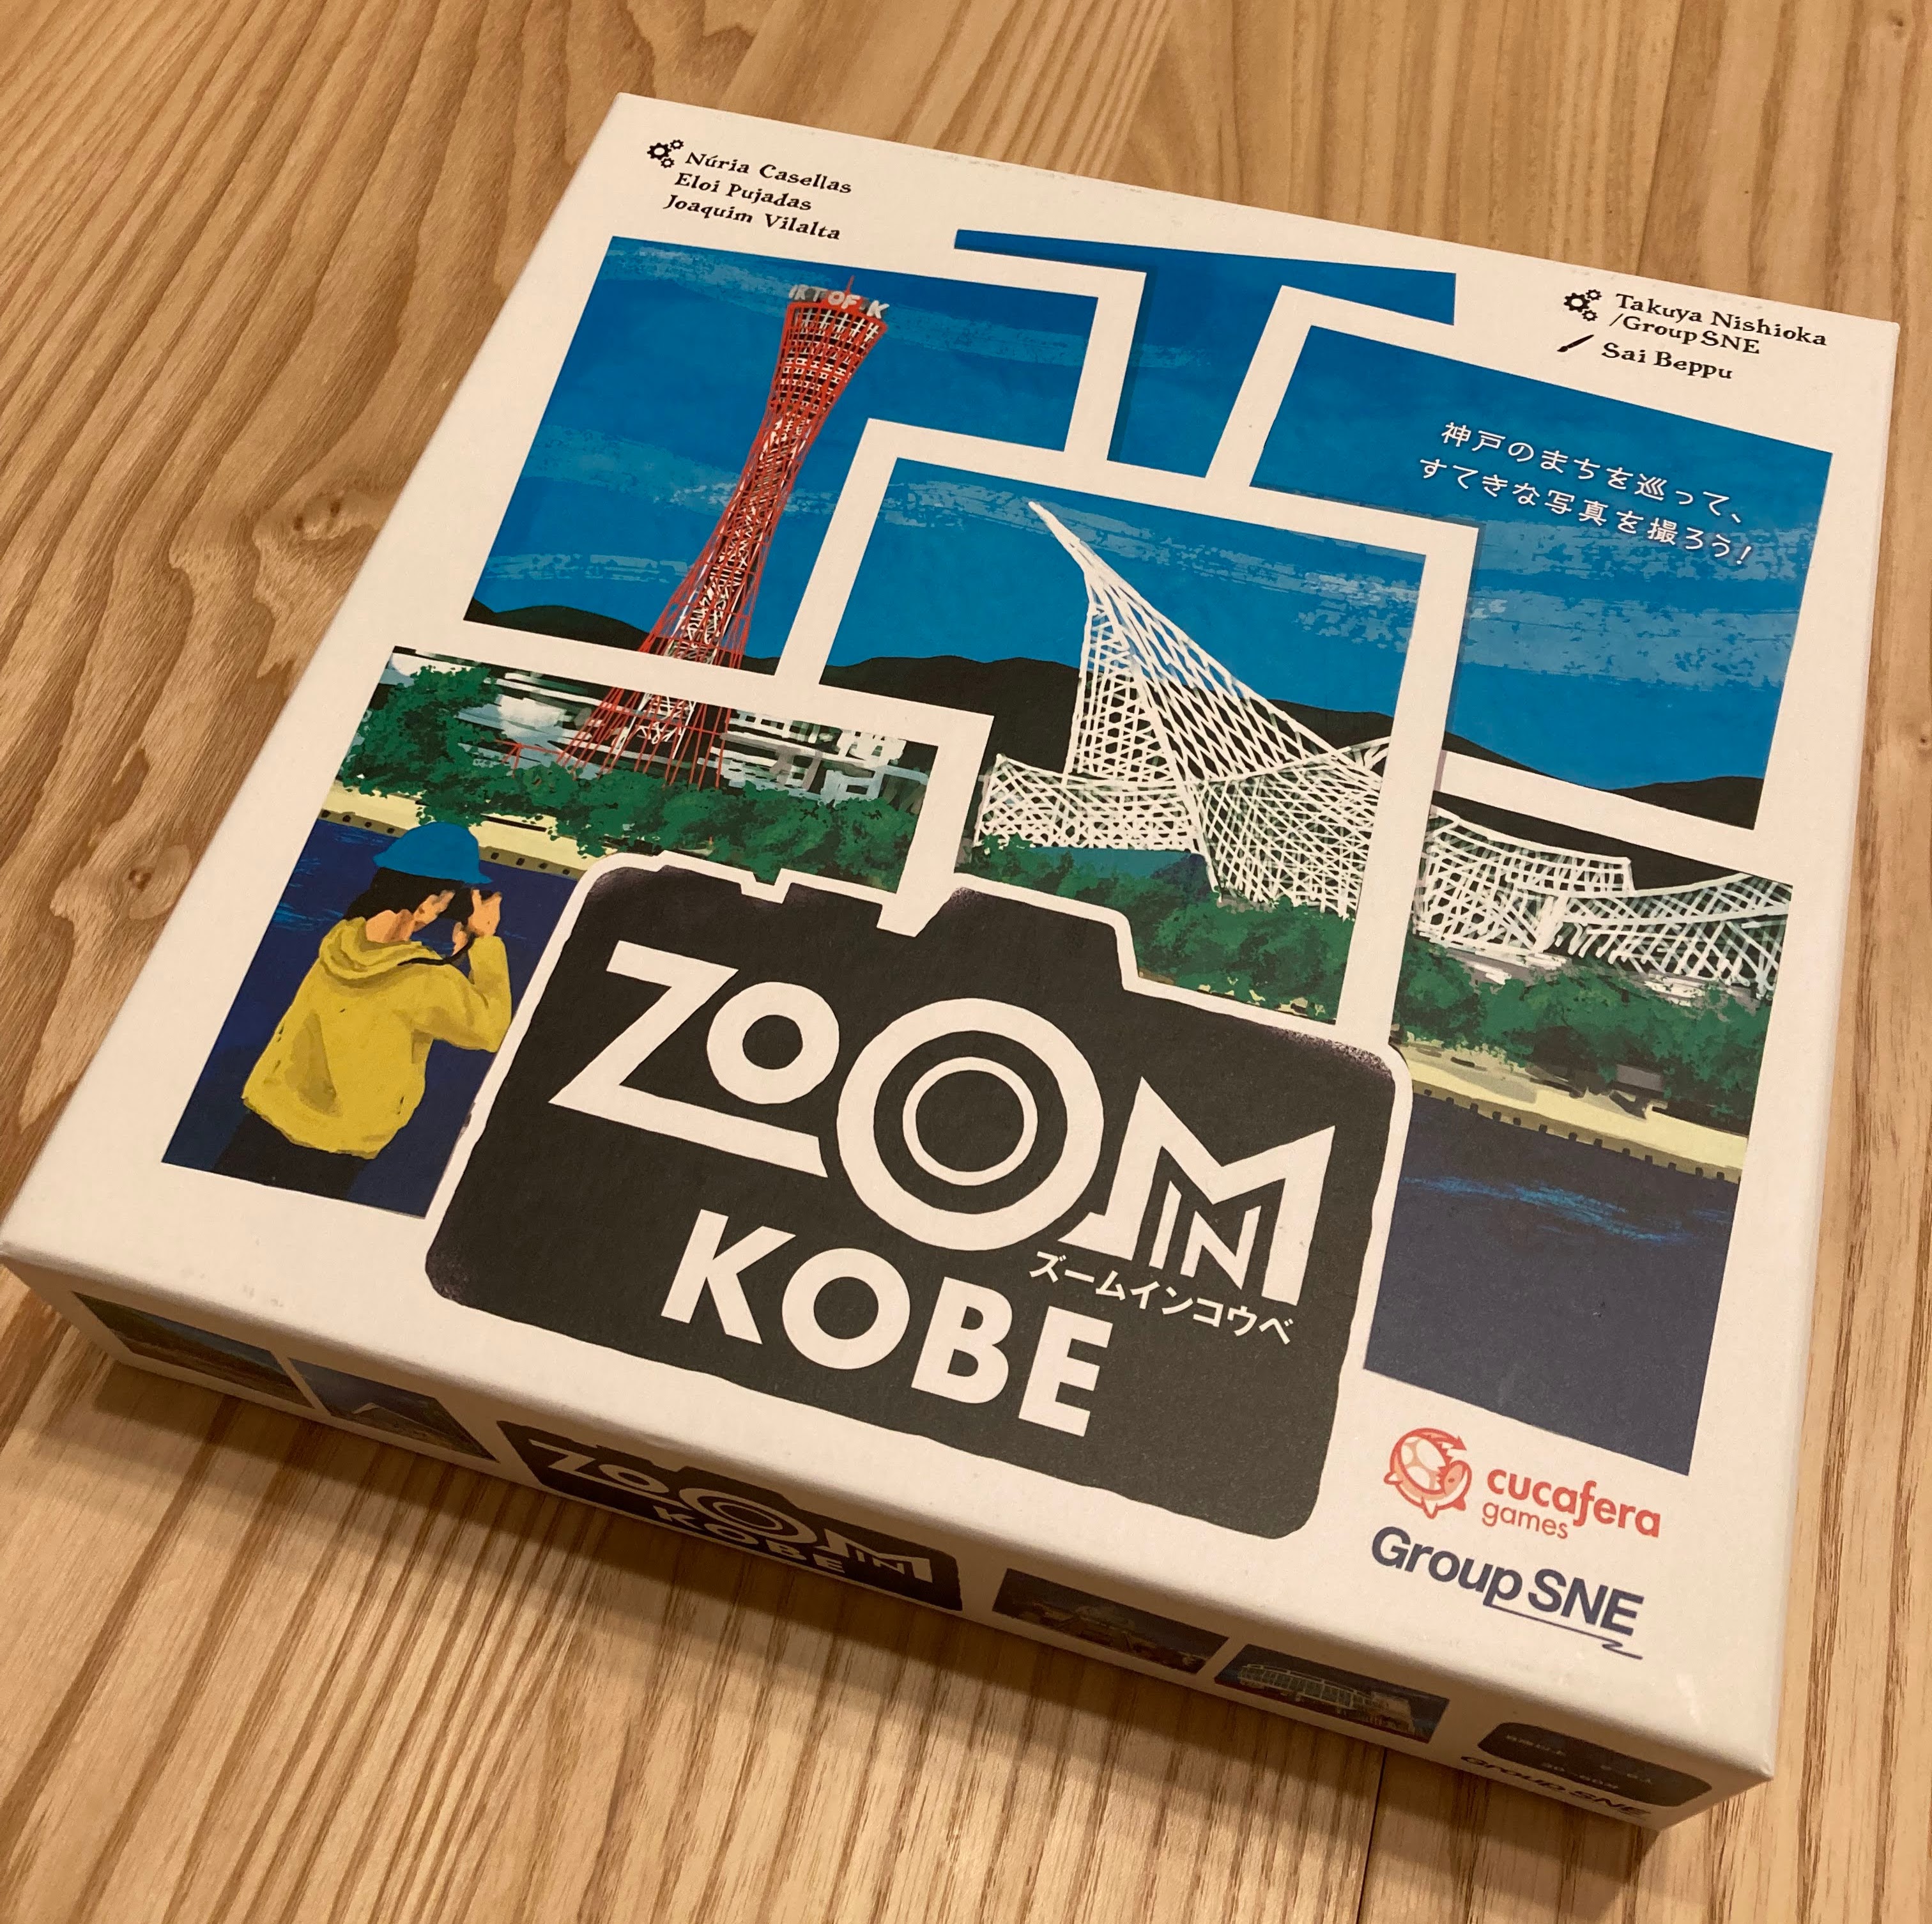 New board game – Zoom in Kobe